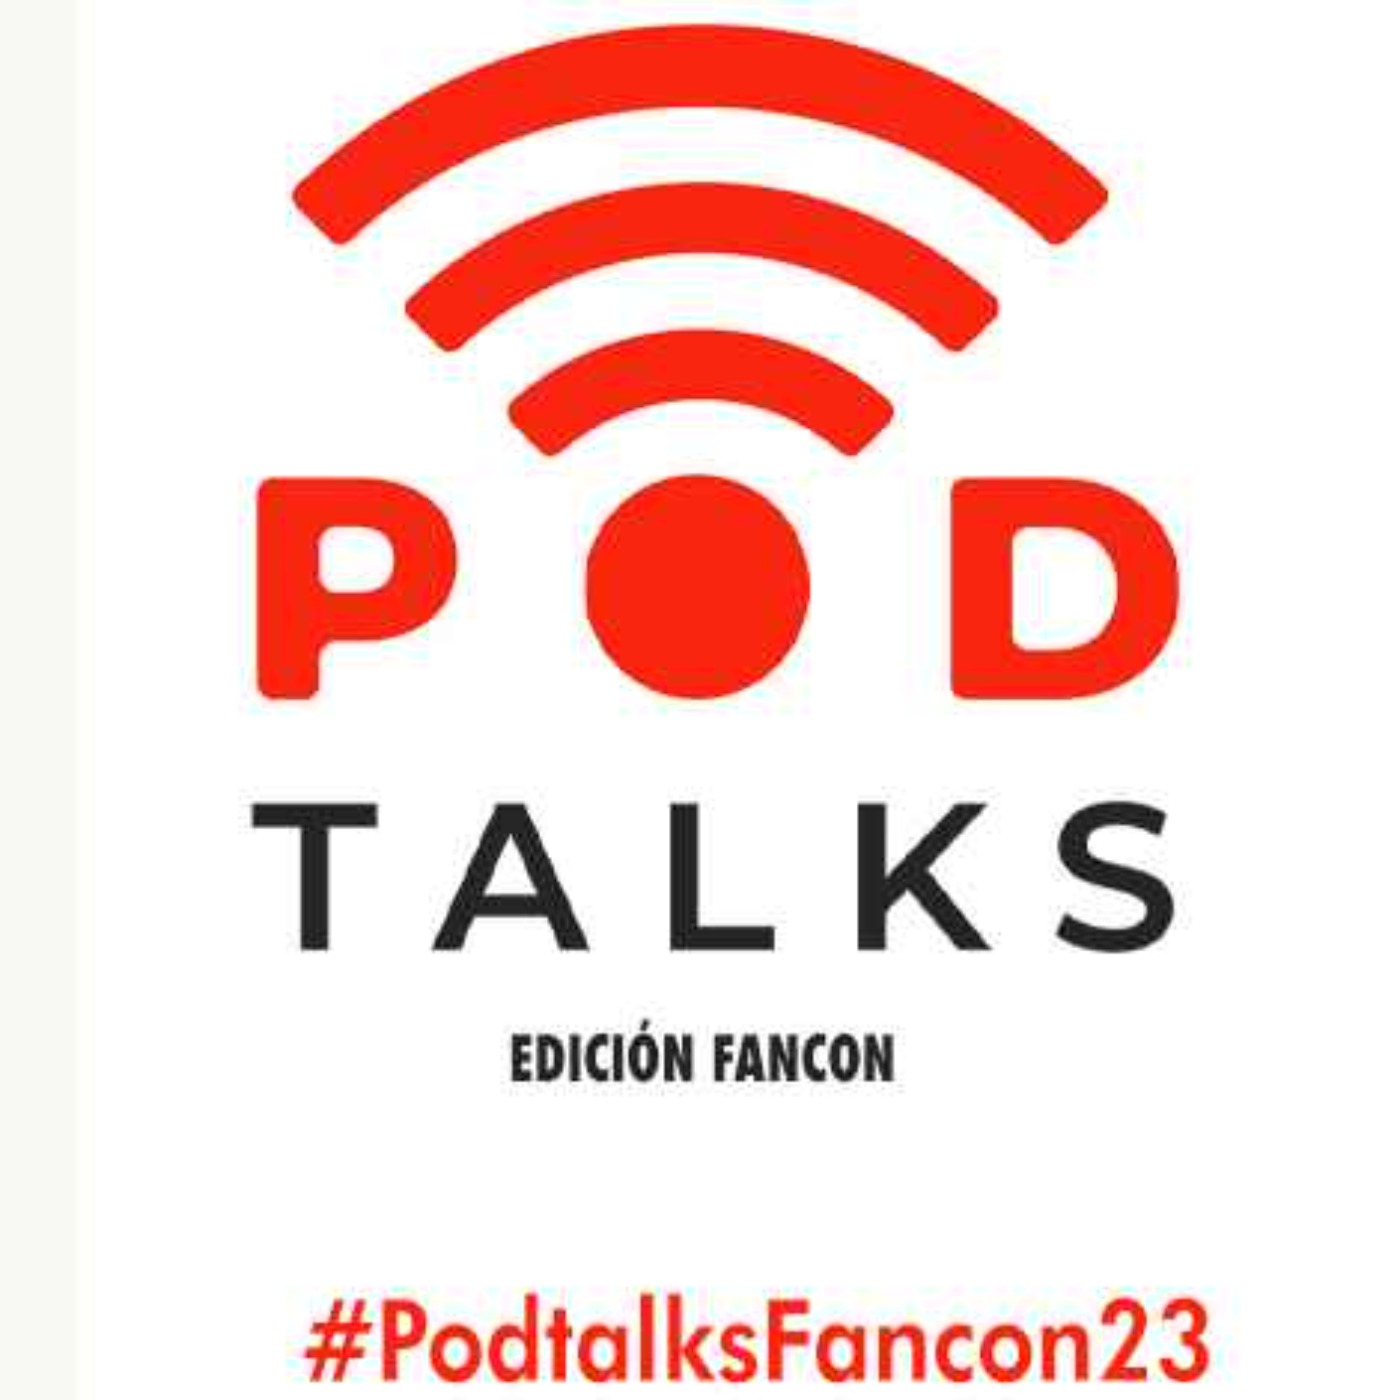 Presentación Podtalks Fancon 23